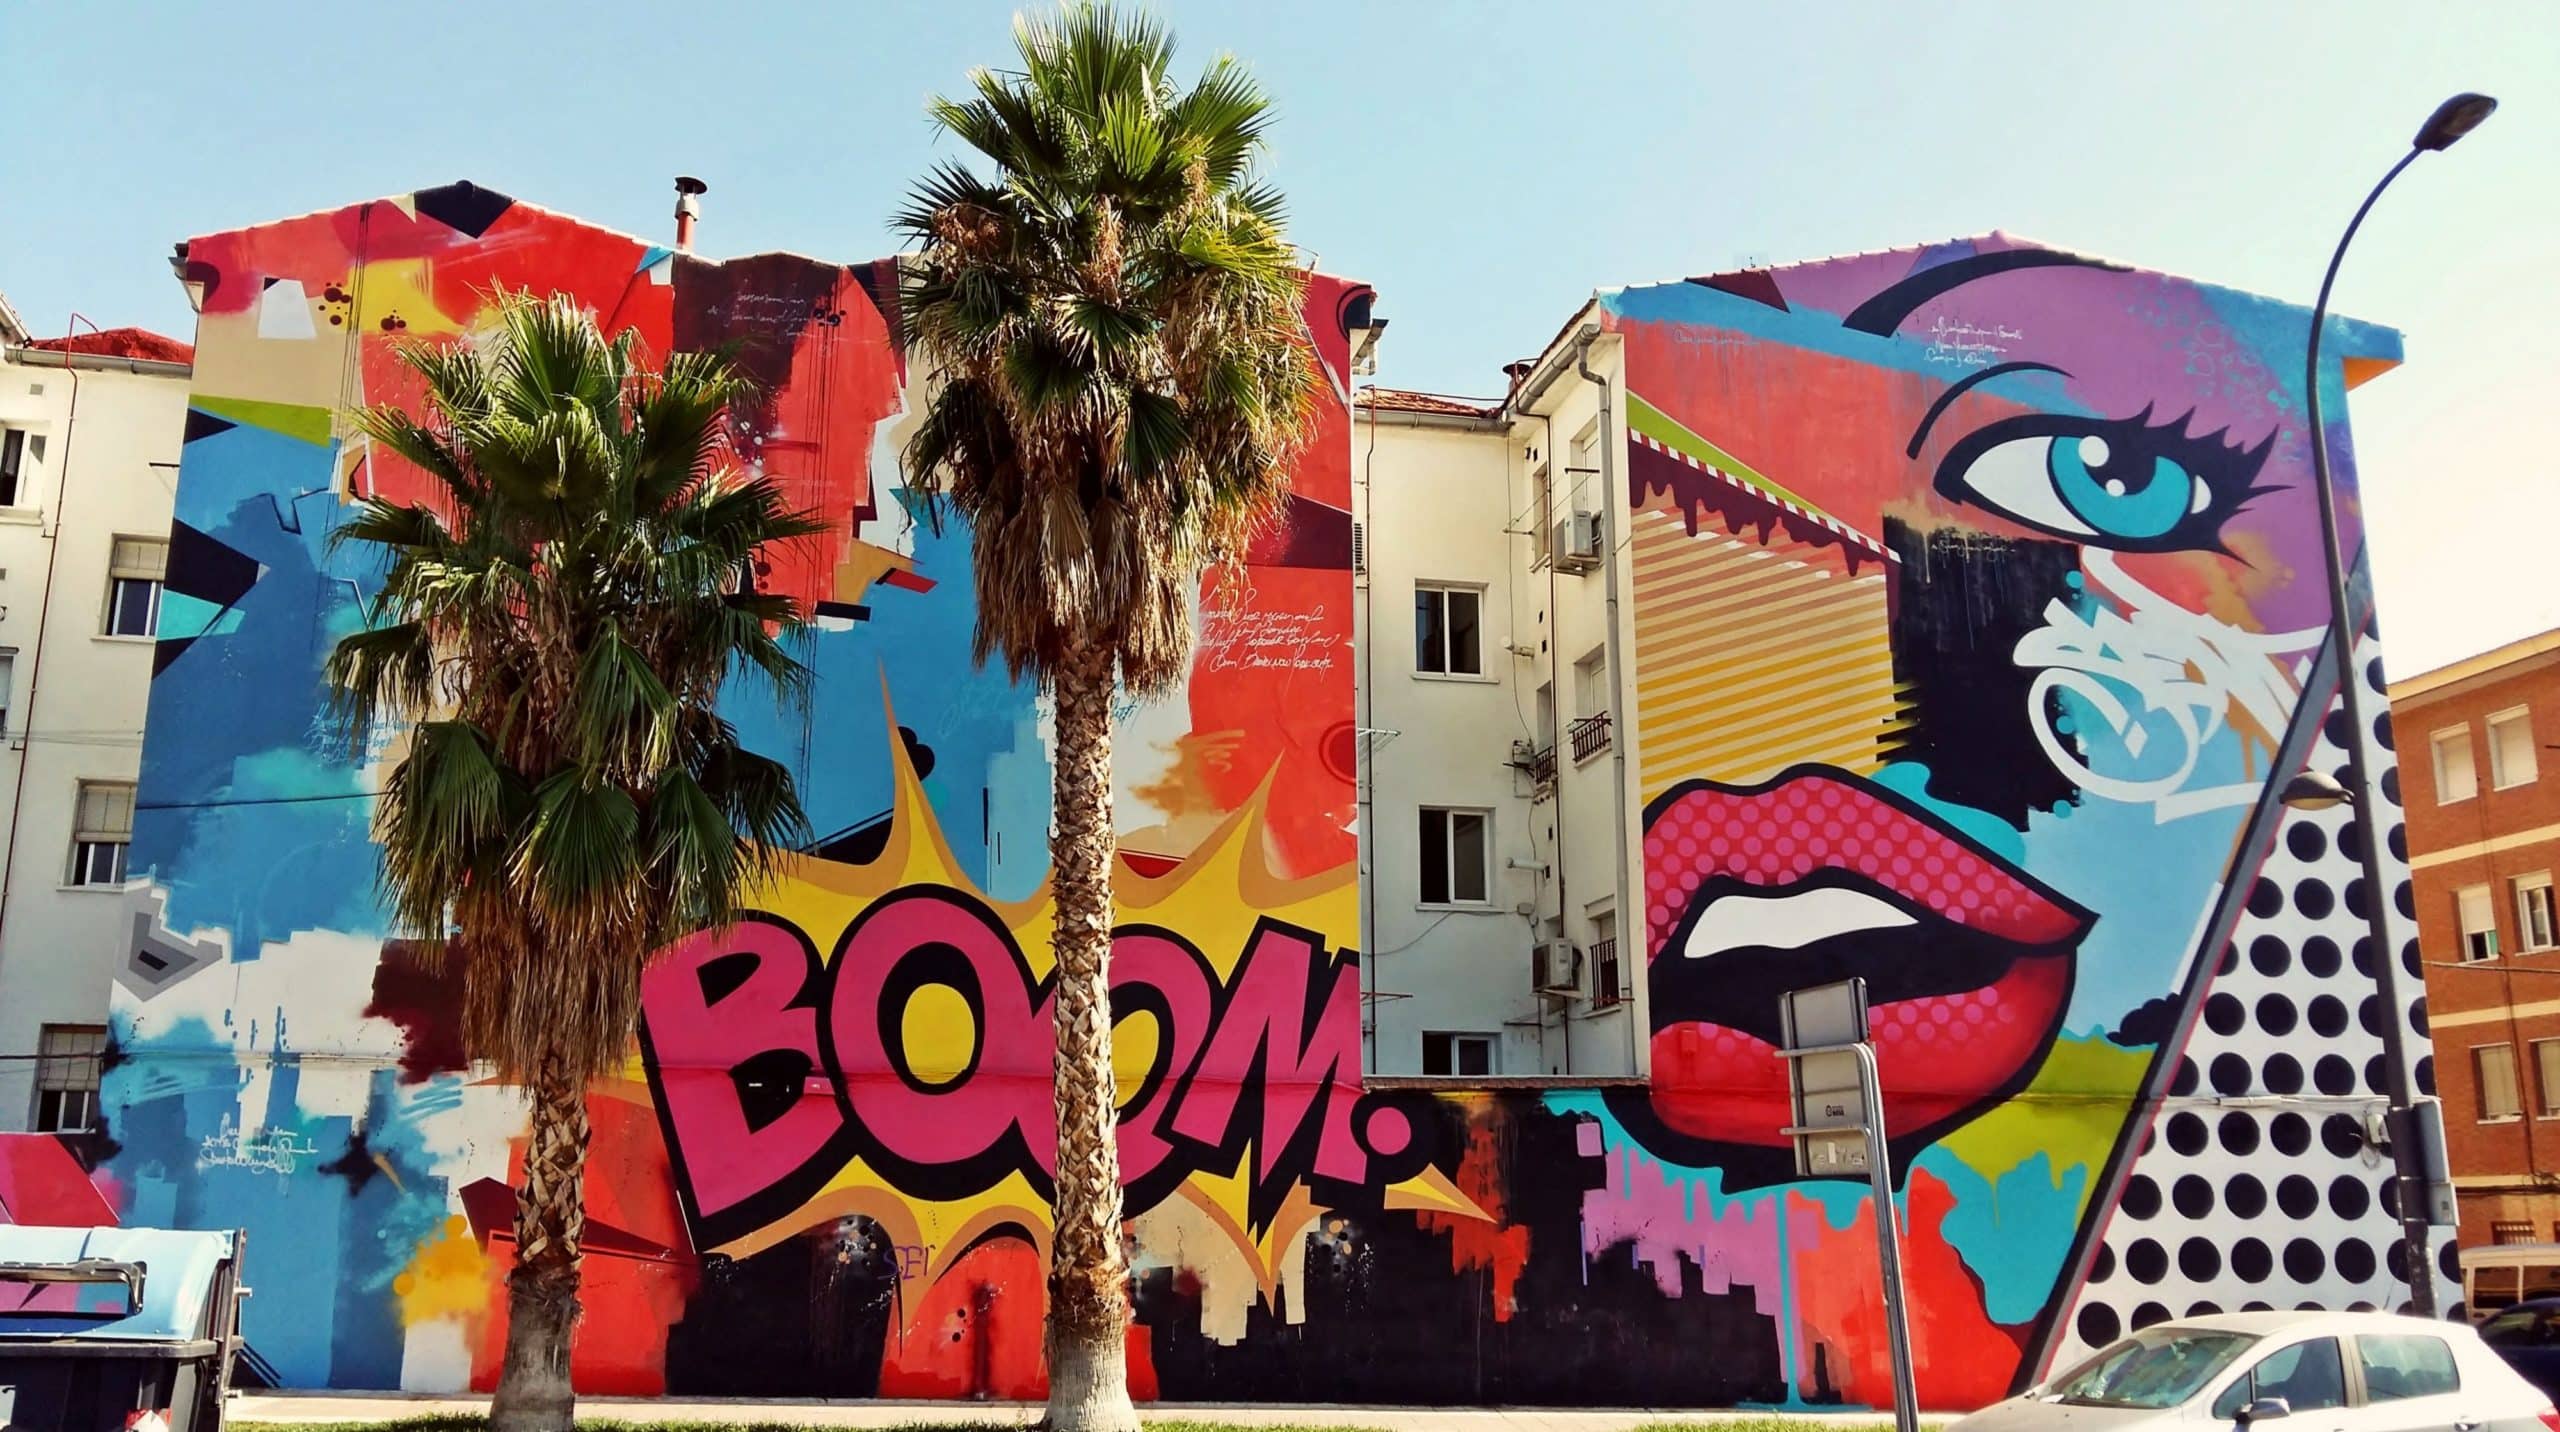 Dieses Pop Art Mural des Streetart Künstlers SEN2 in Getafe (Spanien) zeigt eine gelungene Symbiose aus Pop Art und Urban Art